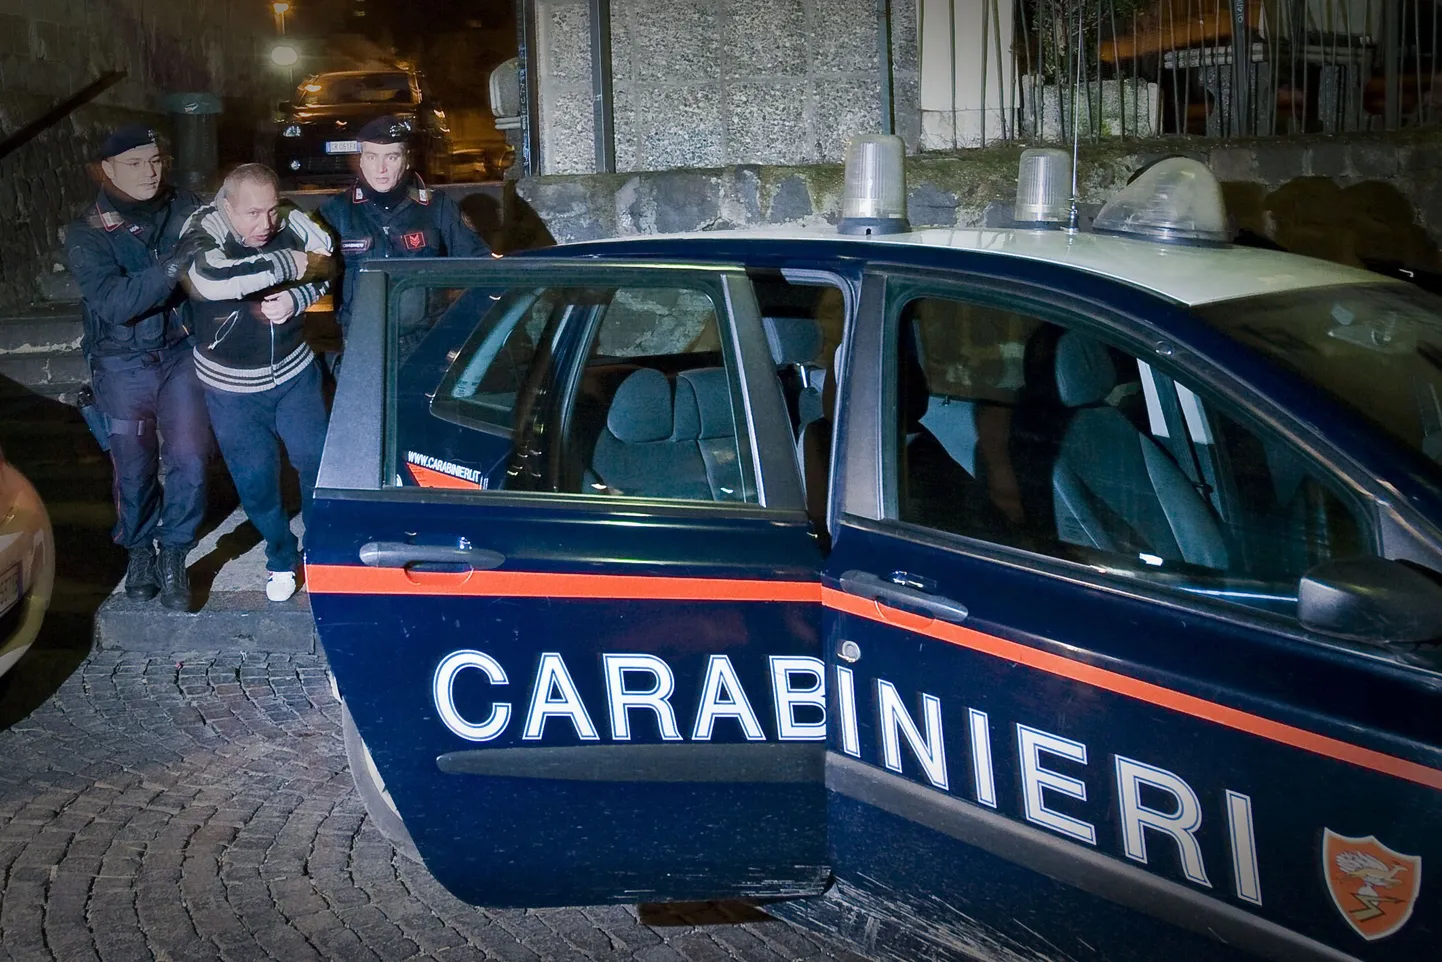 Itaalia politsei avastas vedela kokaiiniga immutatud rõivad